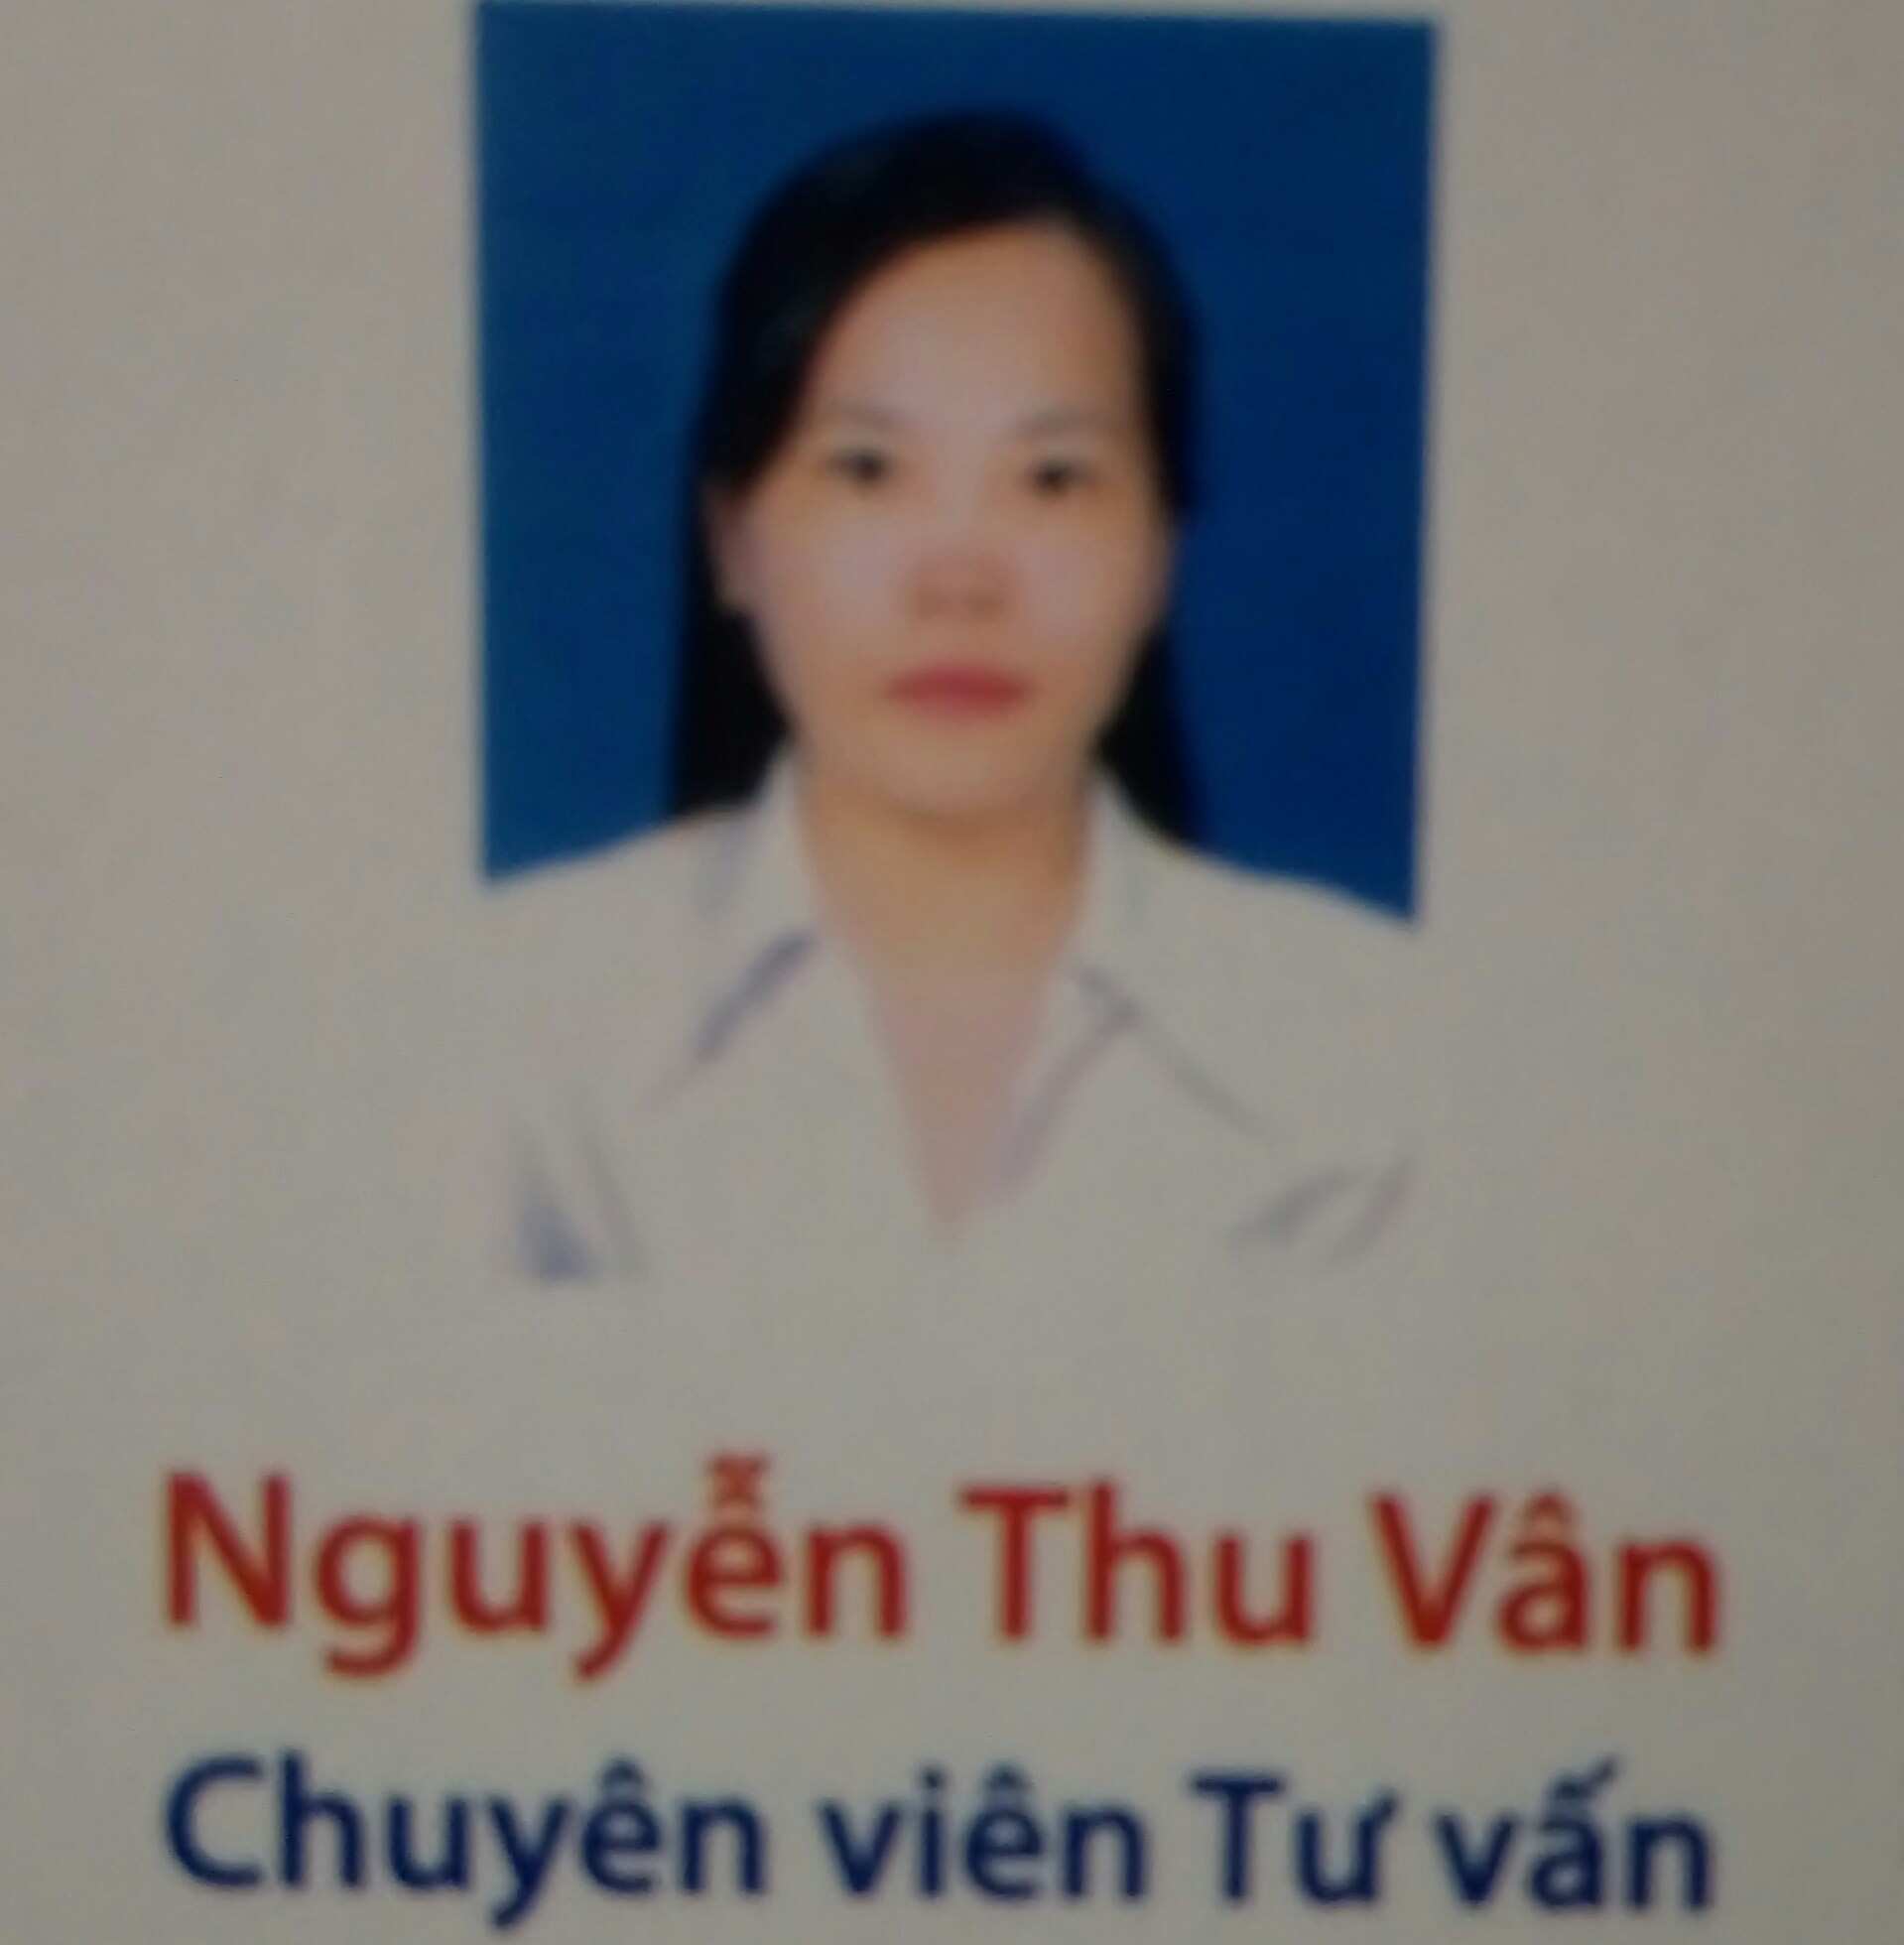 Chuyên gia Nguyễn Thu Vân